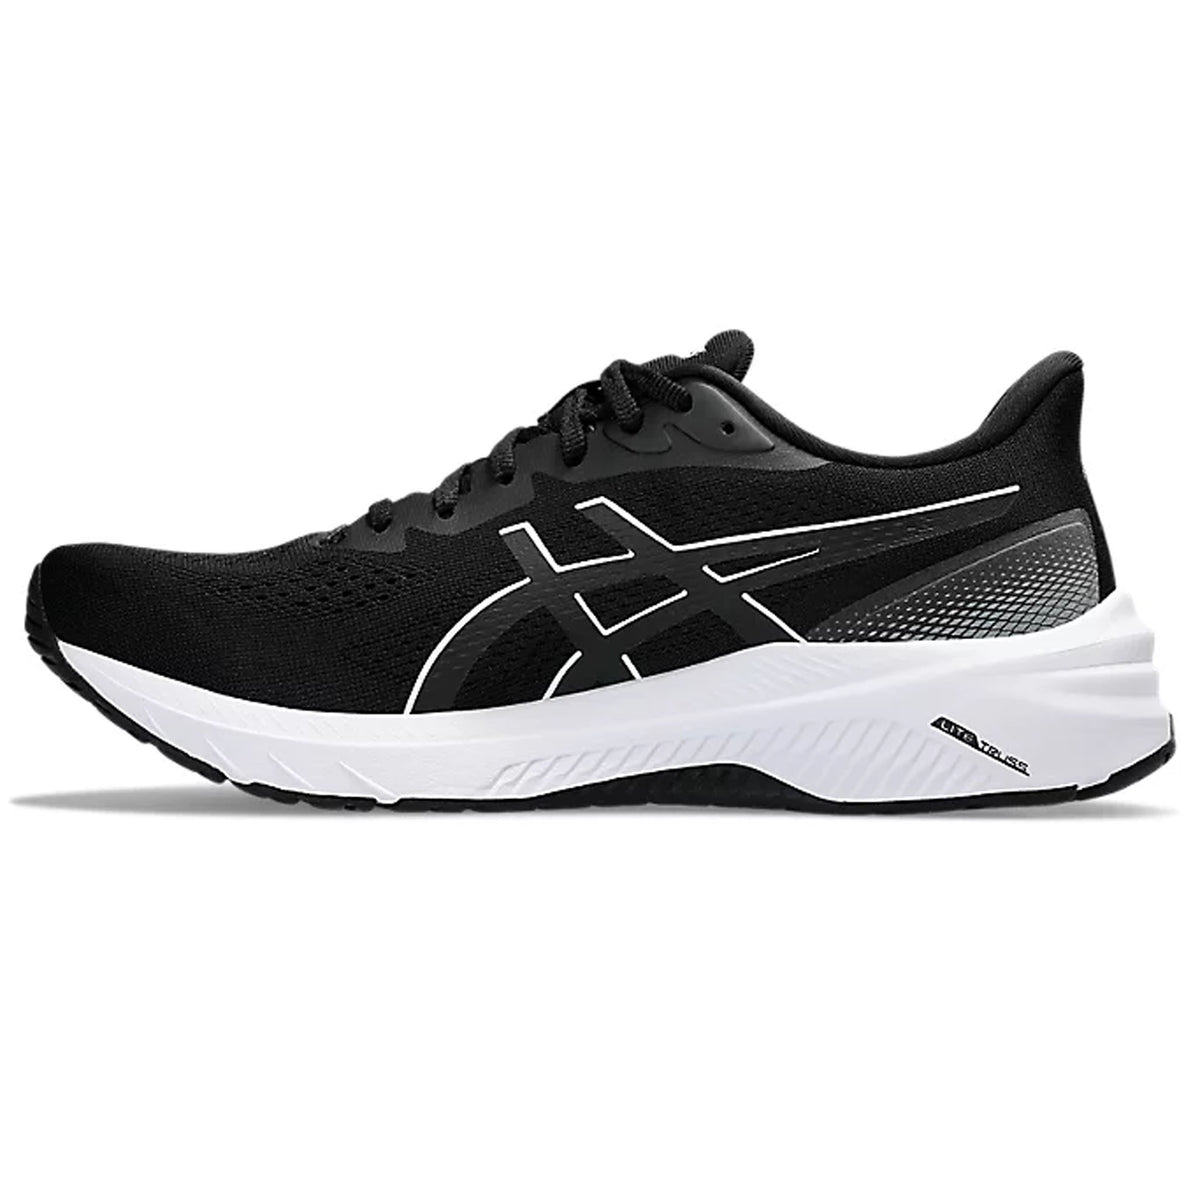 Asics GT 1000 12 Mens Running Shoes: Black/White